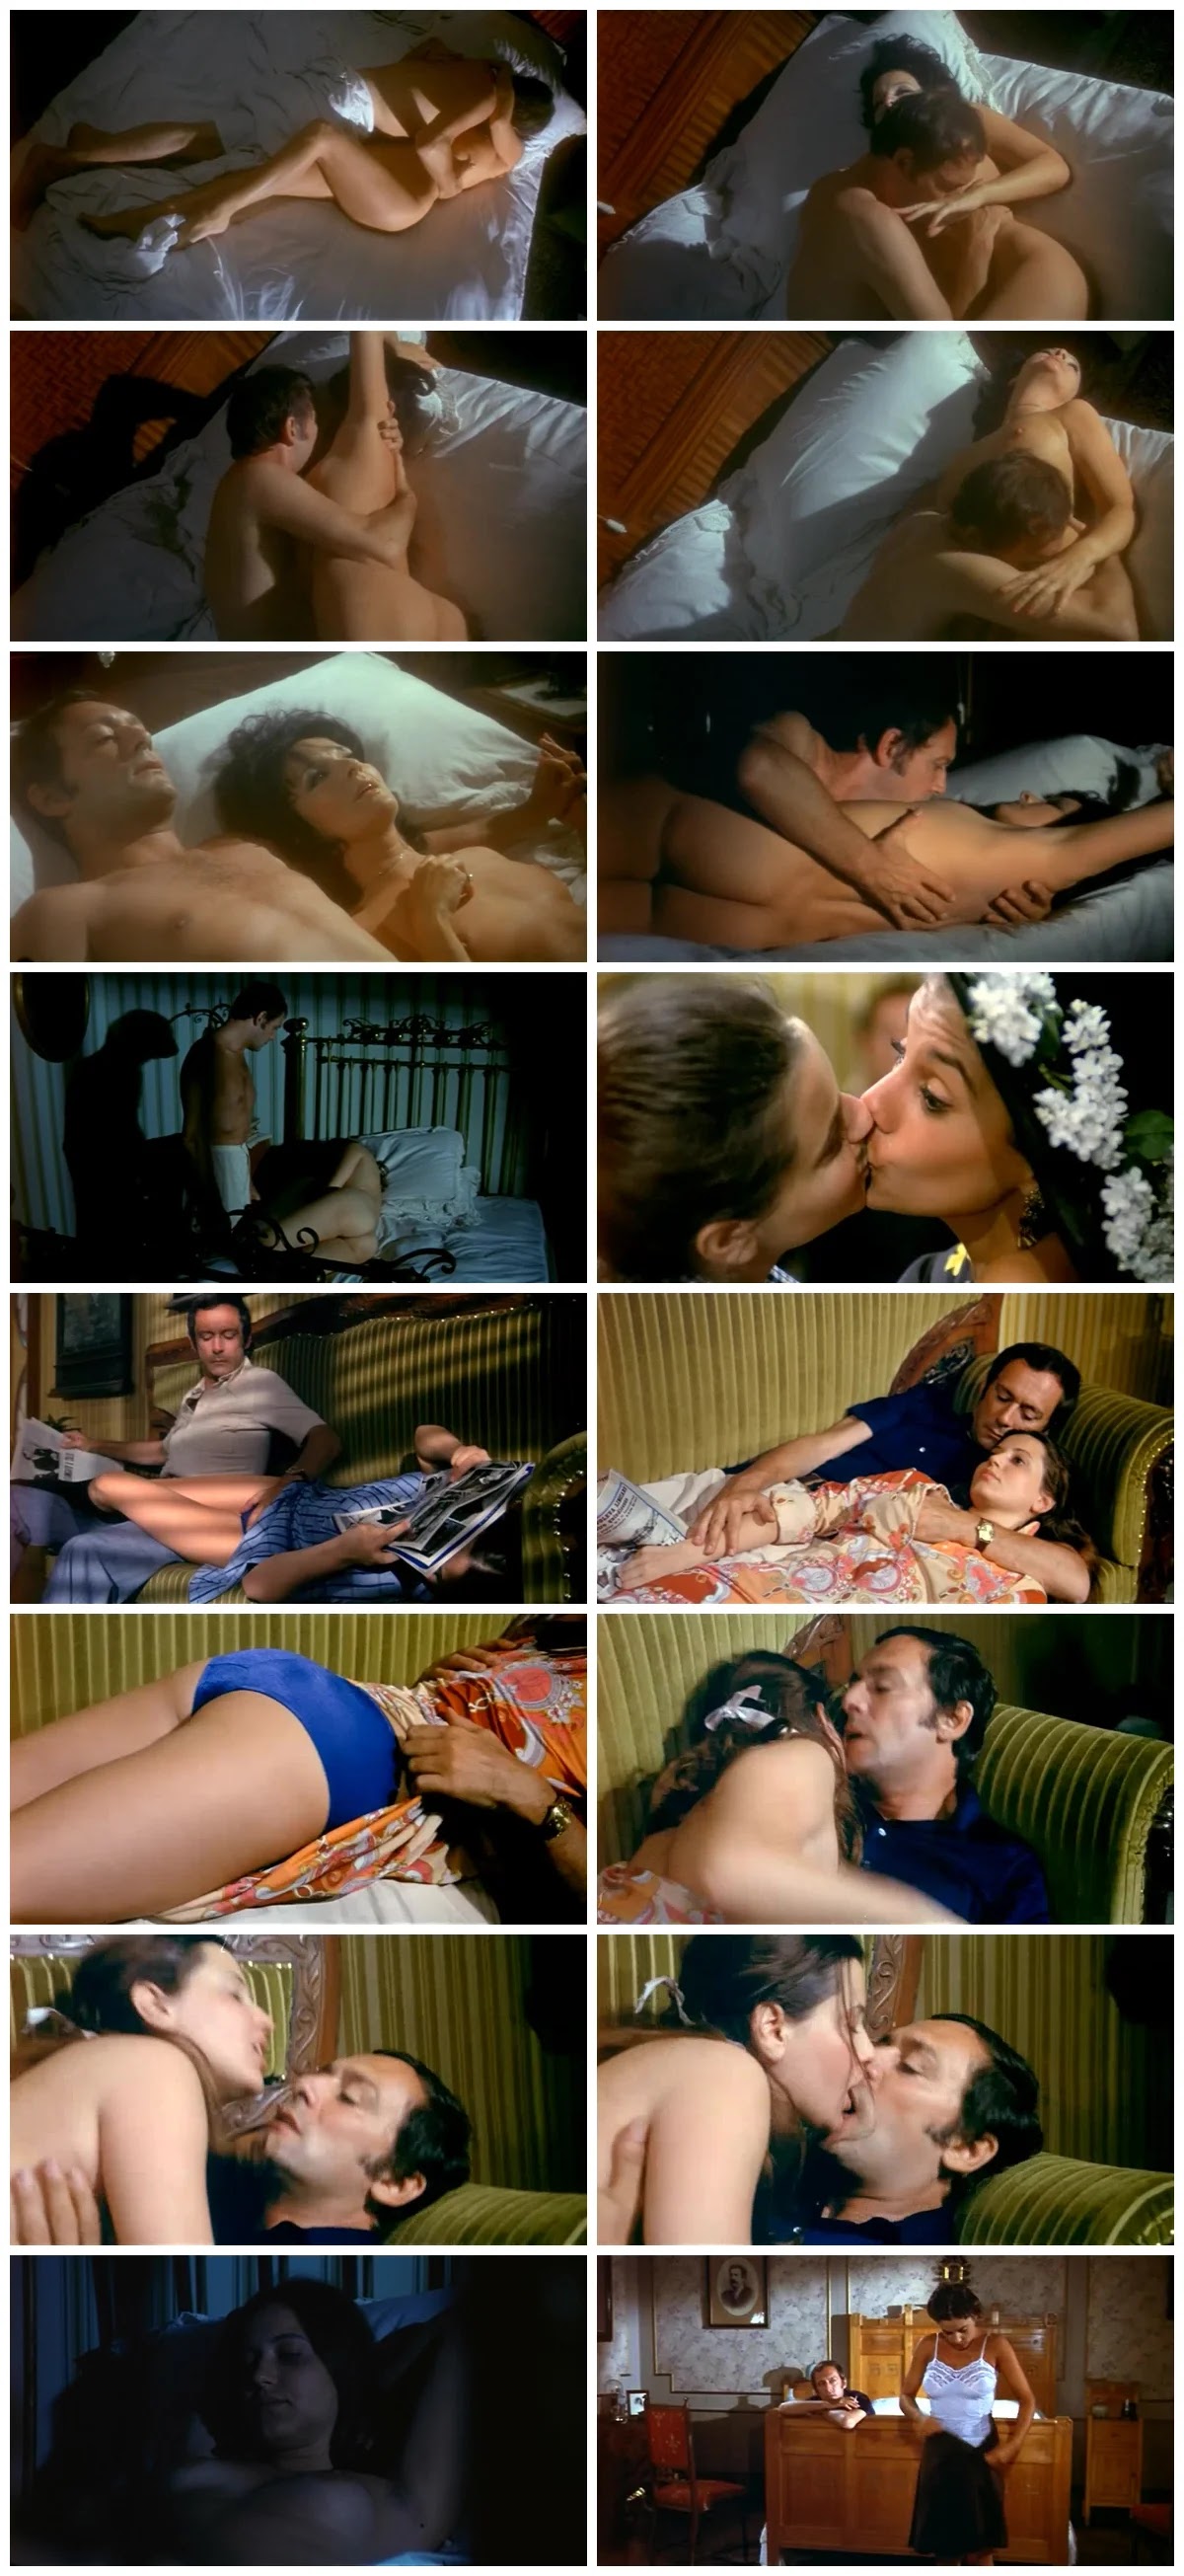 La seduzione (1973) EroGarga Watch Free Vintage Porn Movies, Retro Sex Videos, Mobile Porn pic image